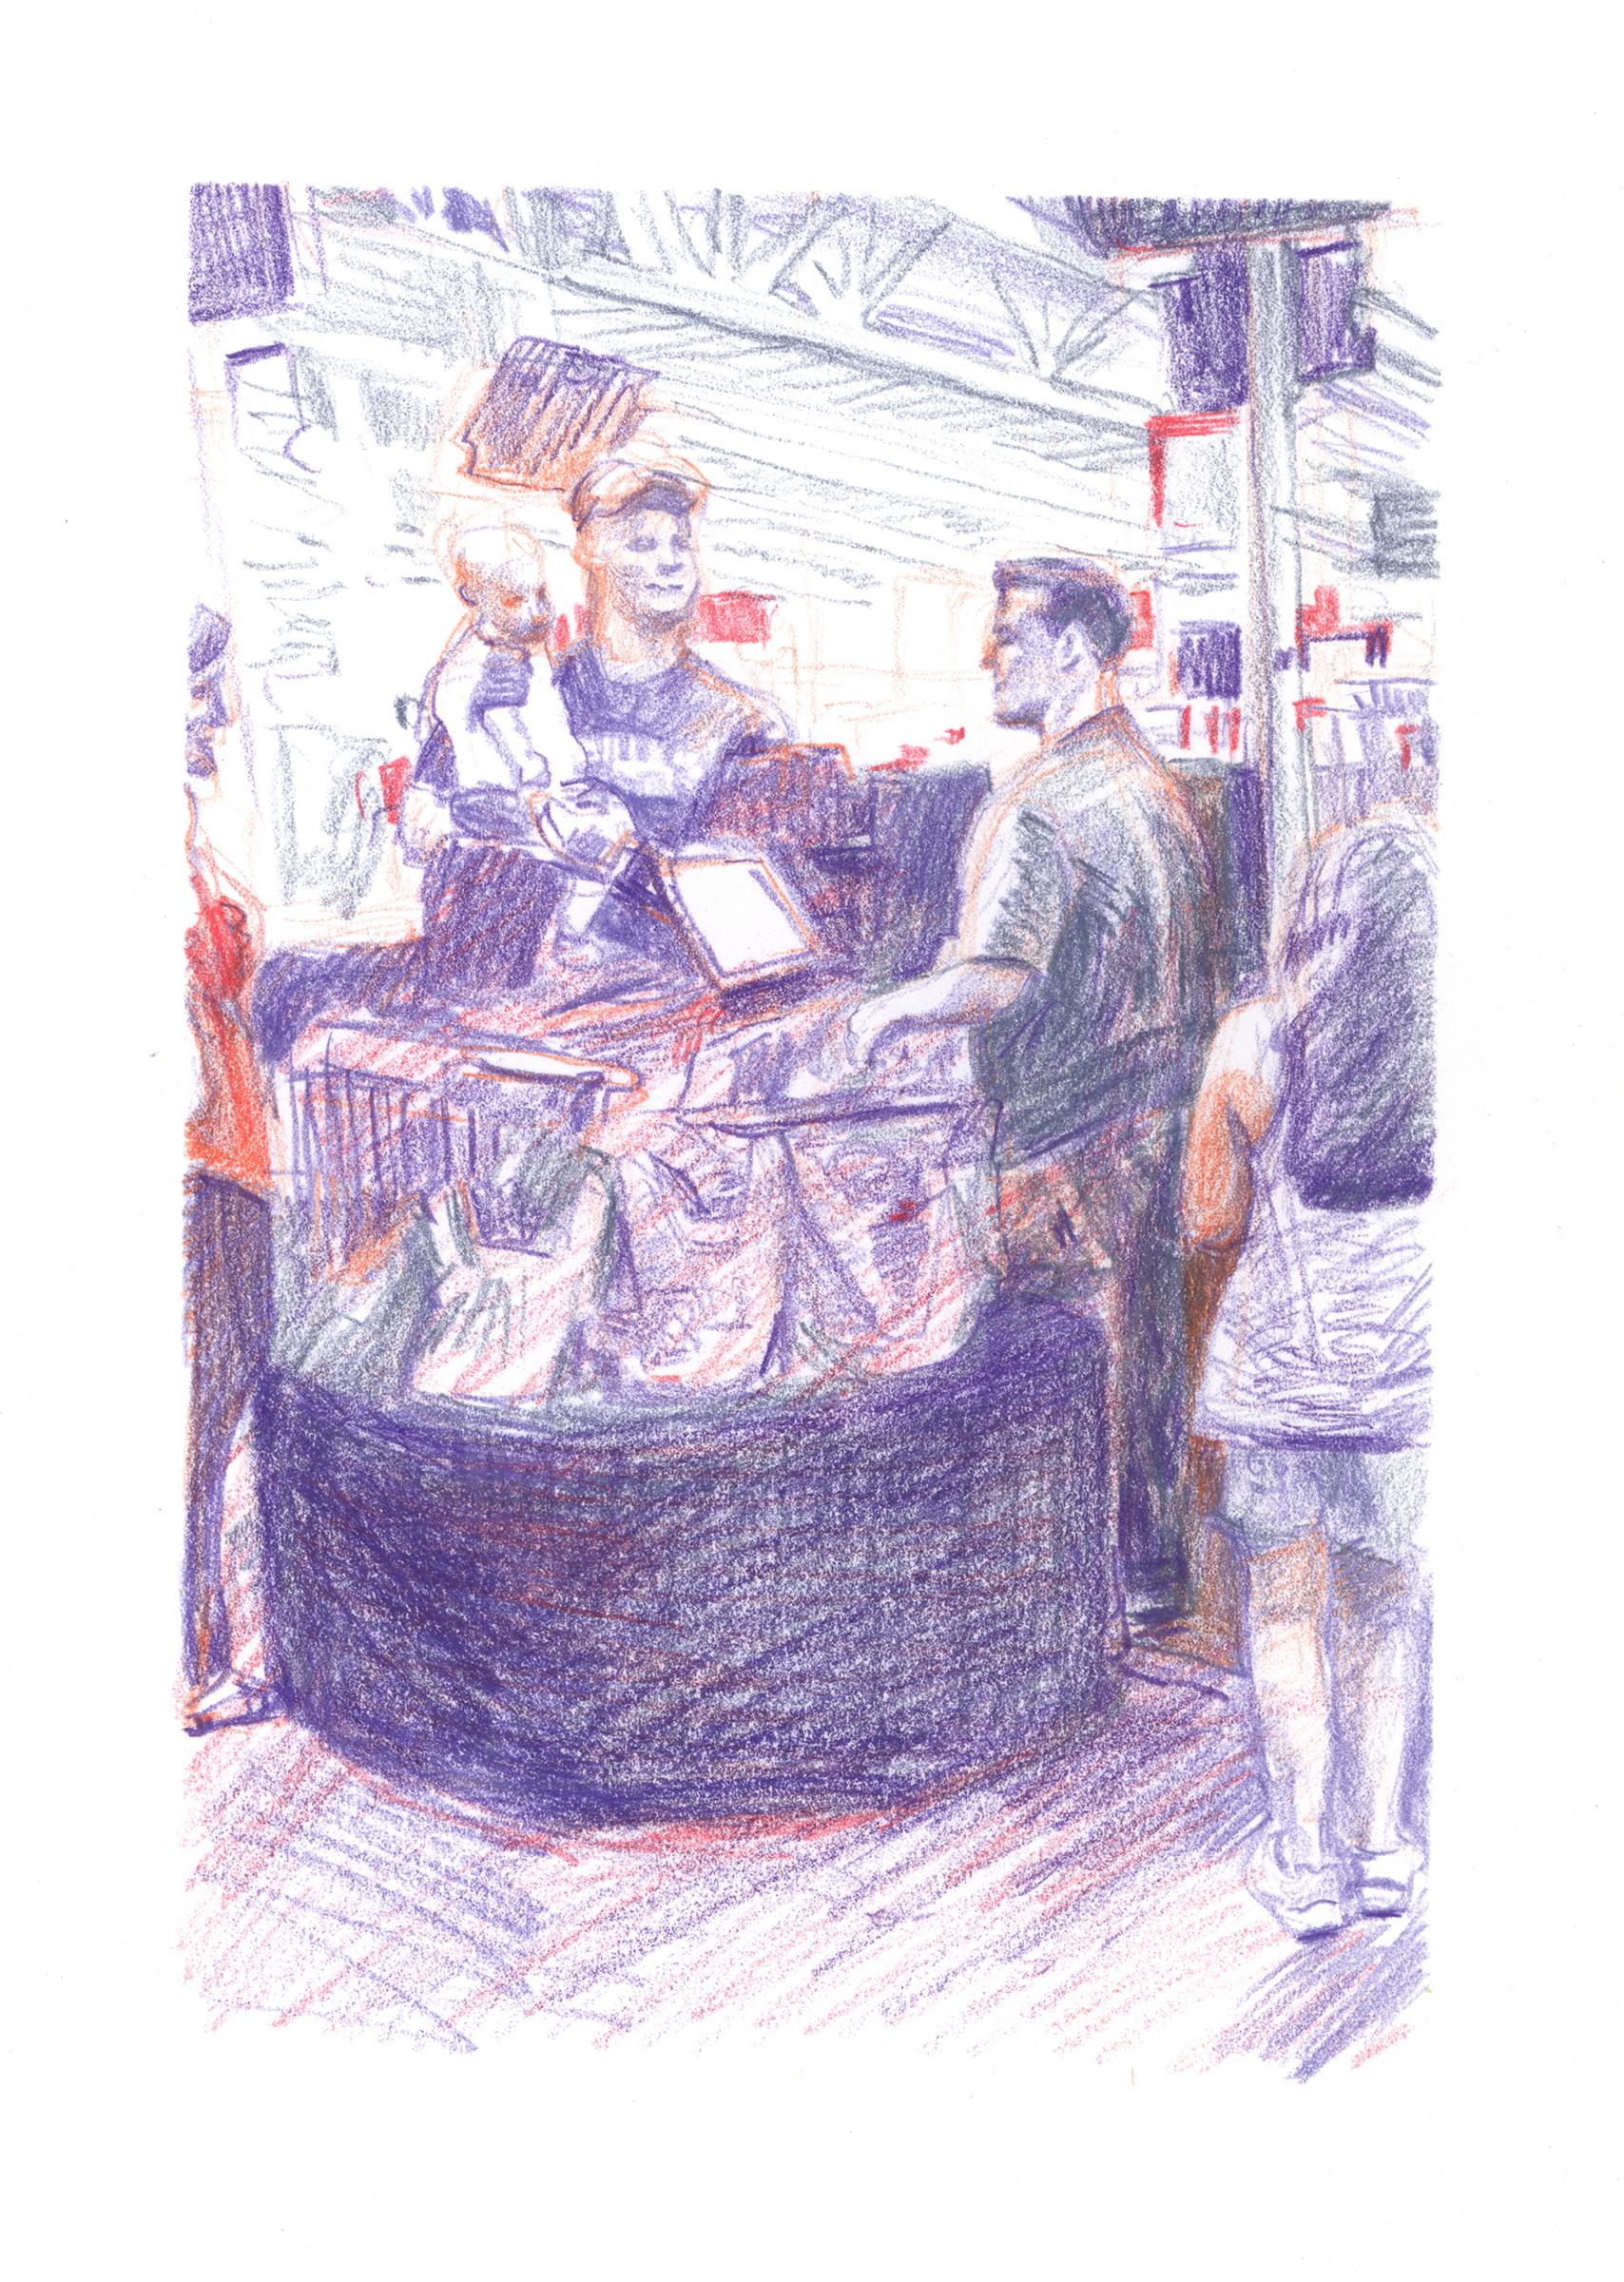 "Marketplace Cashier #44" - dessin d'intérieur - œuvre colorée sur papier - Daumier